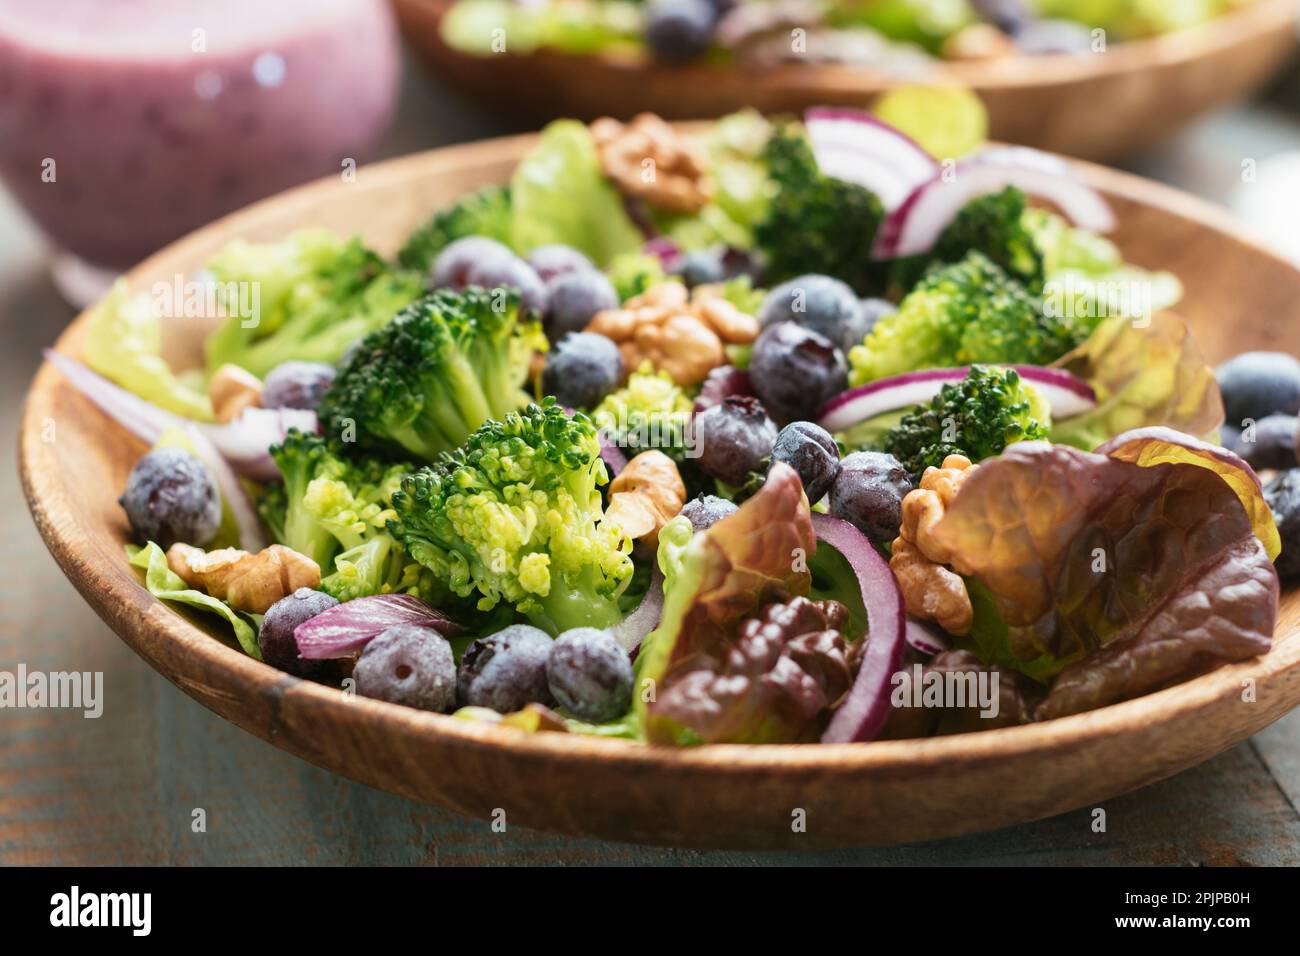 Salade de brocoli et de bleuets de légumes maison avec noix grillées, servie avec une vinaigrette aux bleuets Banque D'Images